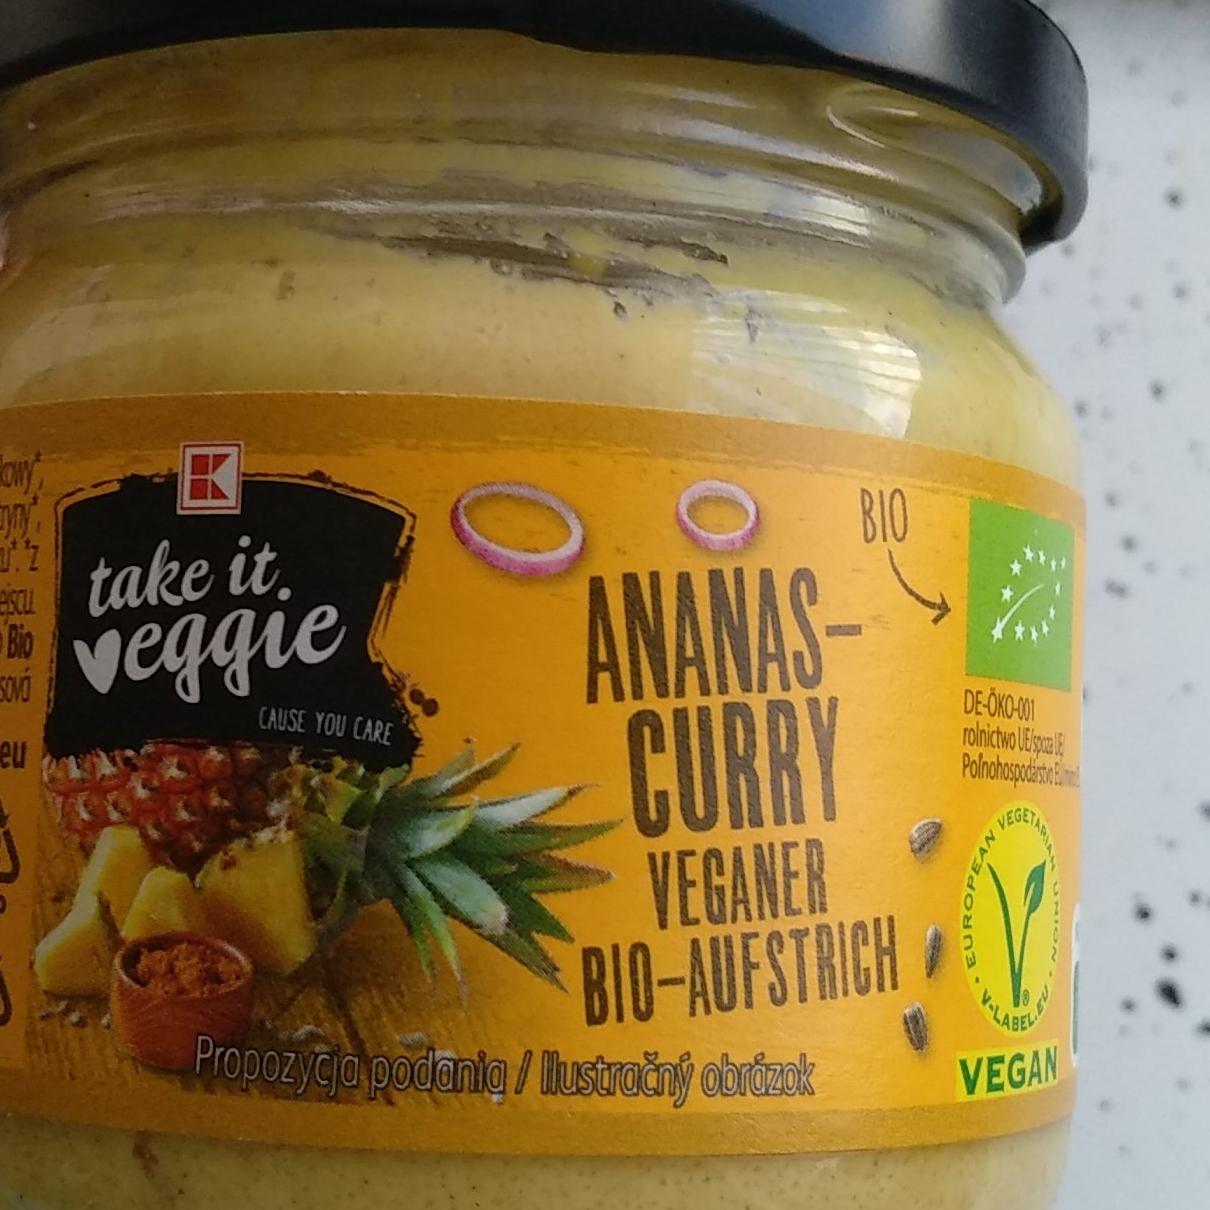 Fotografie - Ananas-Curry veganer bio-aufstrich Take it Veggie